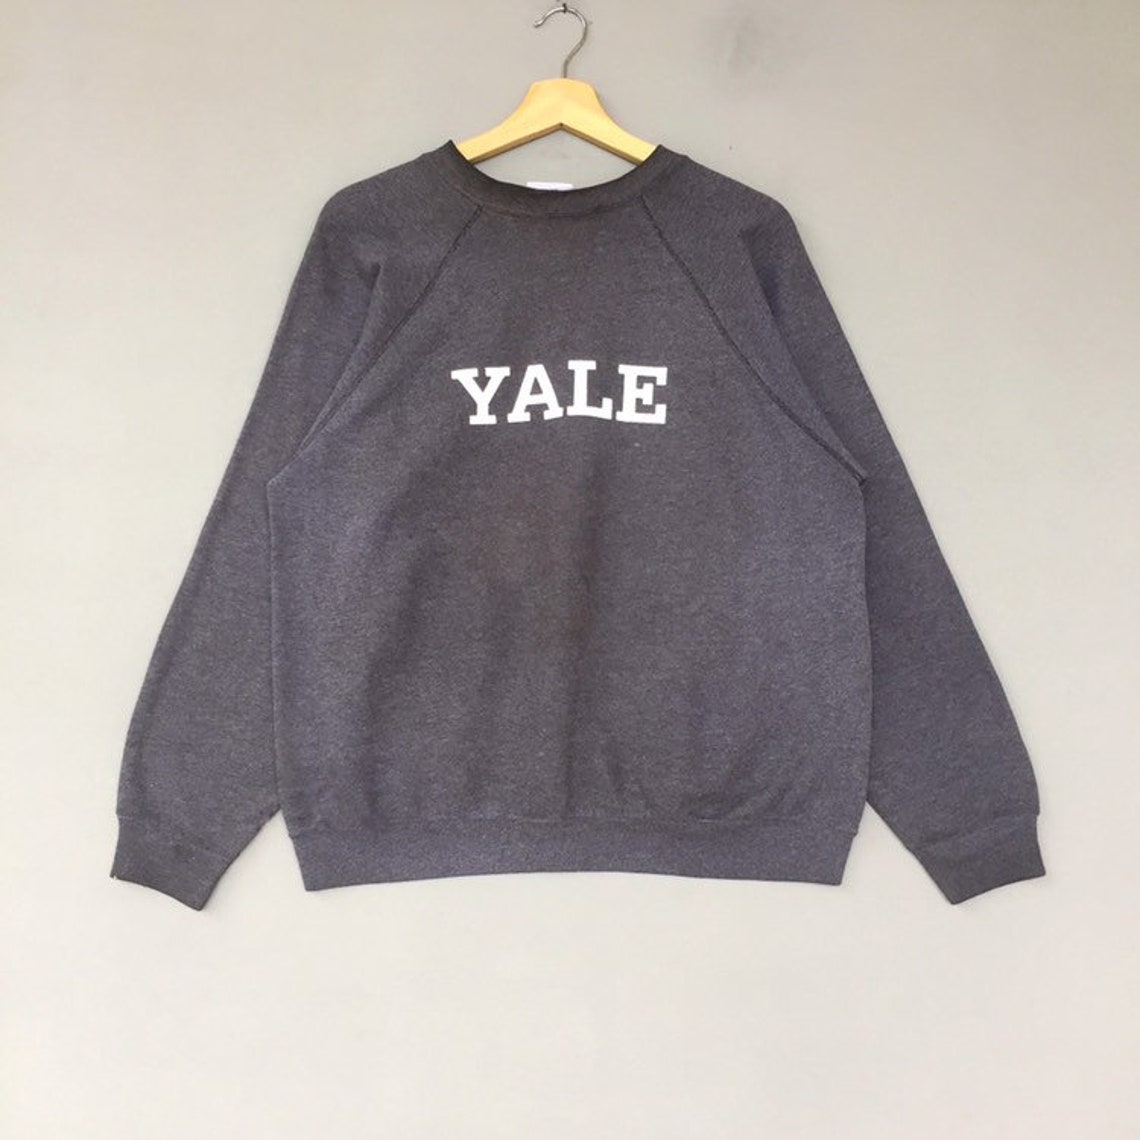 Vintage Yale University sweatshirt crew neck Print Out logo | Etsy